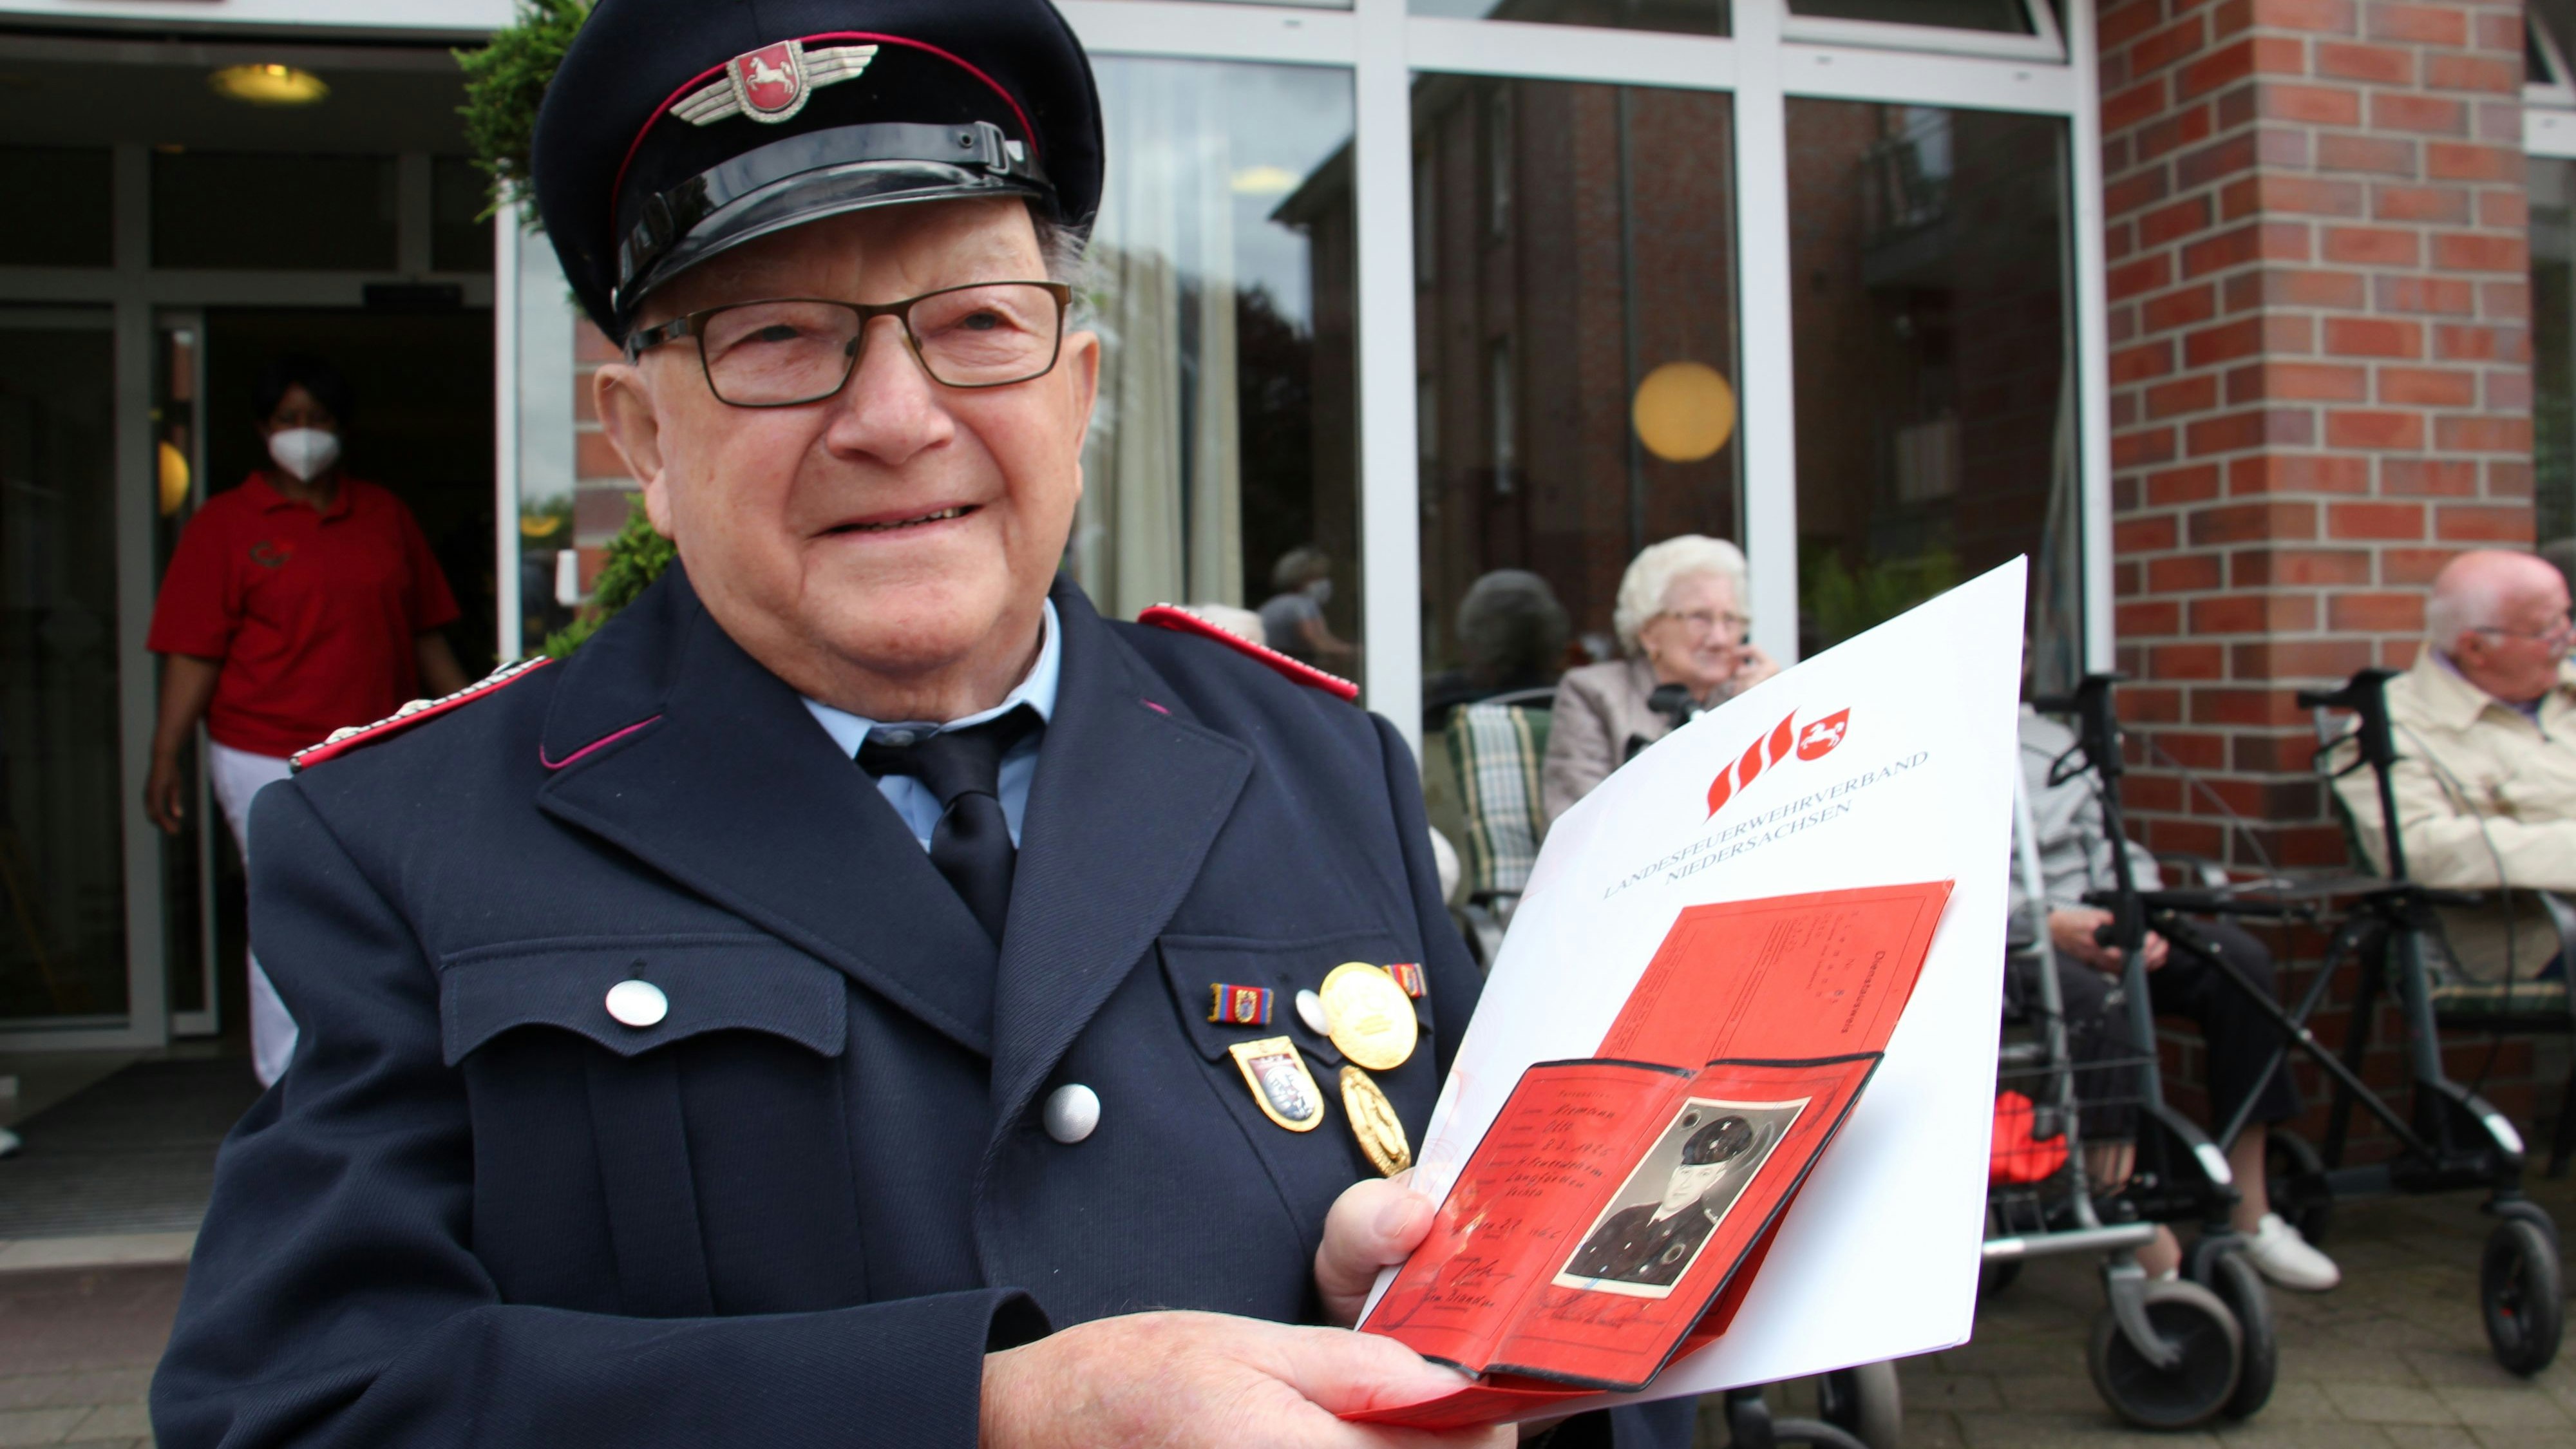 Otto Niemann kann auf die Auszeichnung für seine langjährige Mitgliedschaft stolz sein. Neben der Urkunde hält der Jubilar seinen uralten Feuerwehrausweis in den Händen. Foto: Speckmann